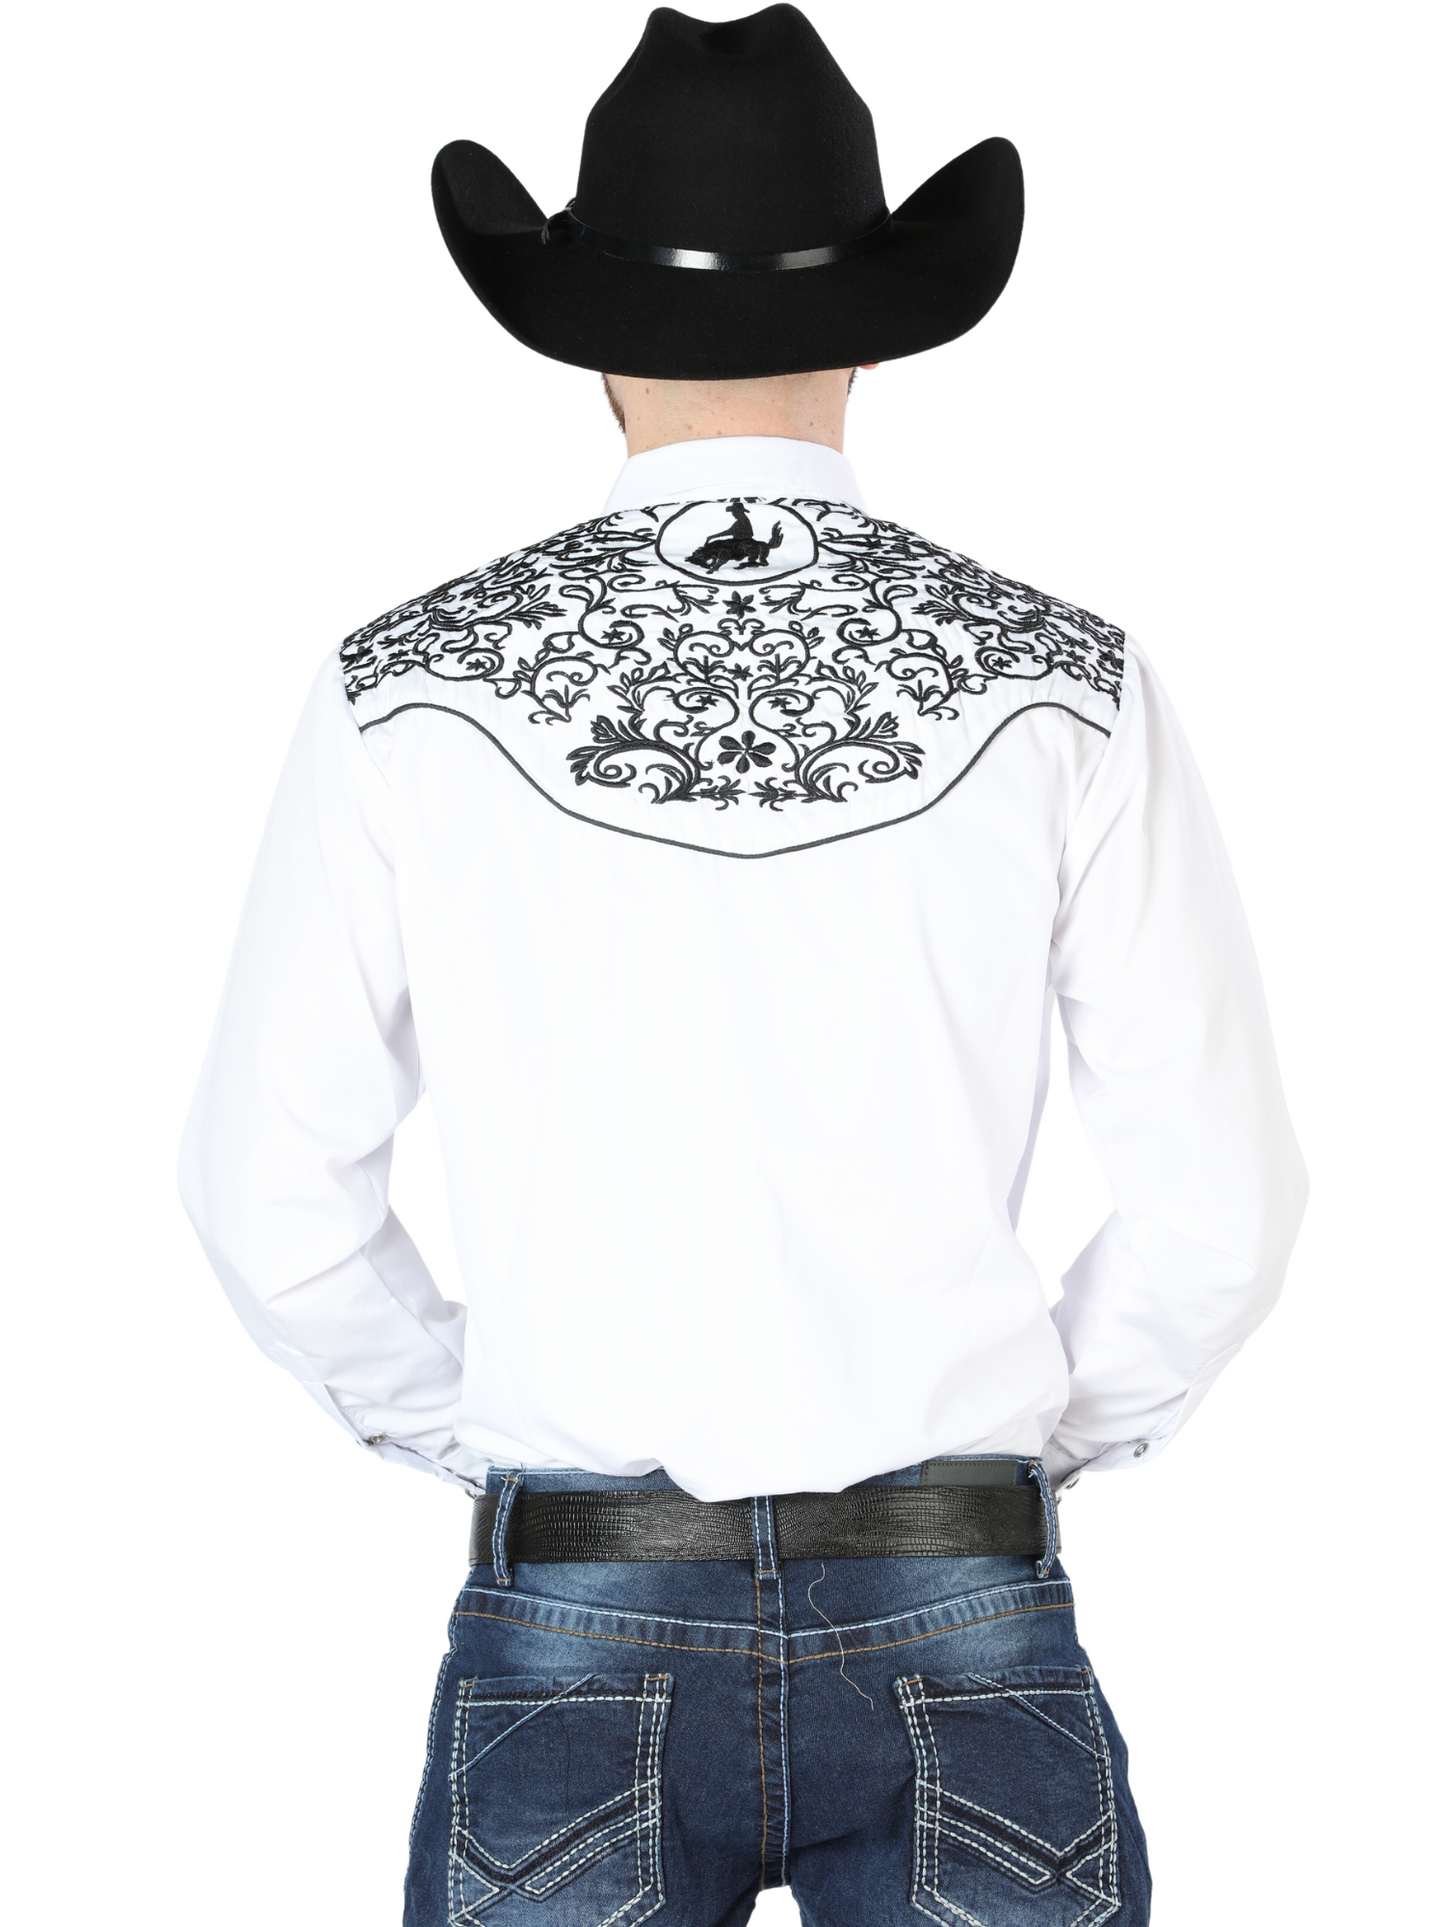 Camisa Vaquera Bordada Manga Larga Blanco para Hombre 'El Señor de los Cielos' - ID: 44188 Western Shirt El Señor de los Cielos 